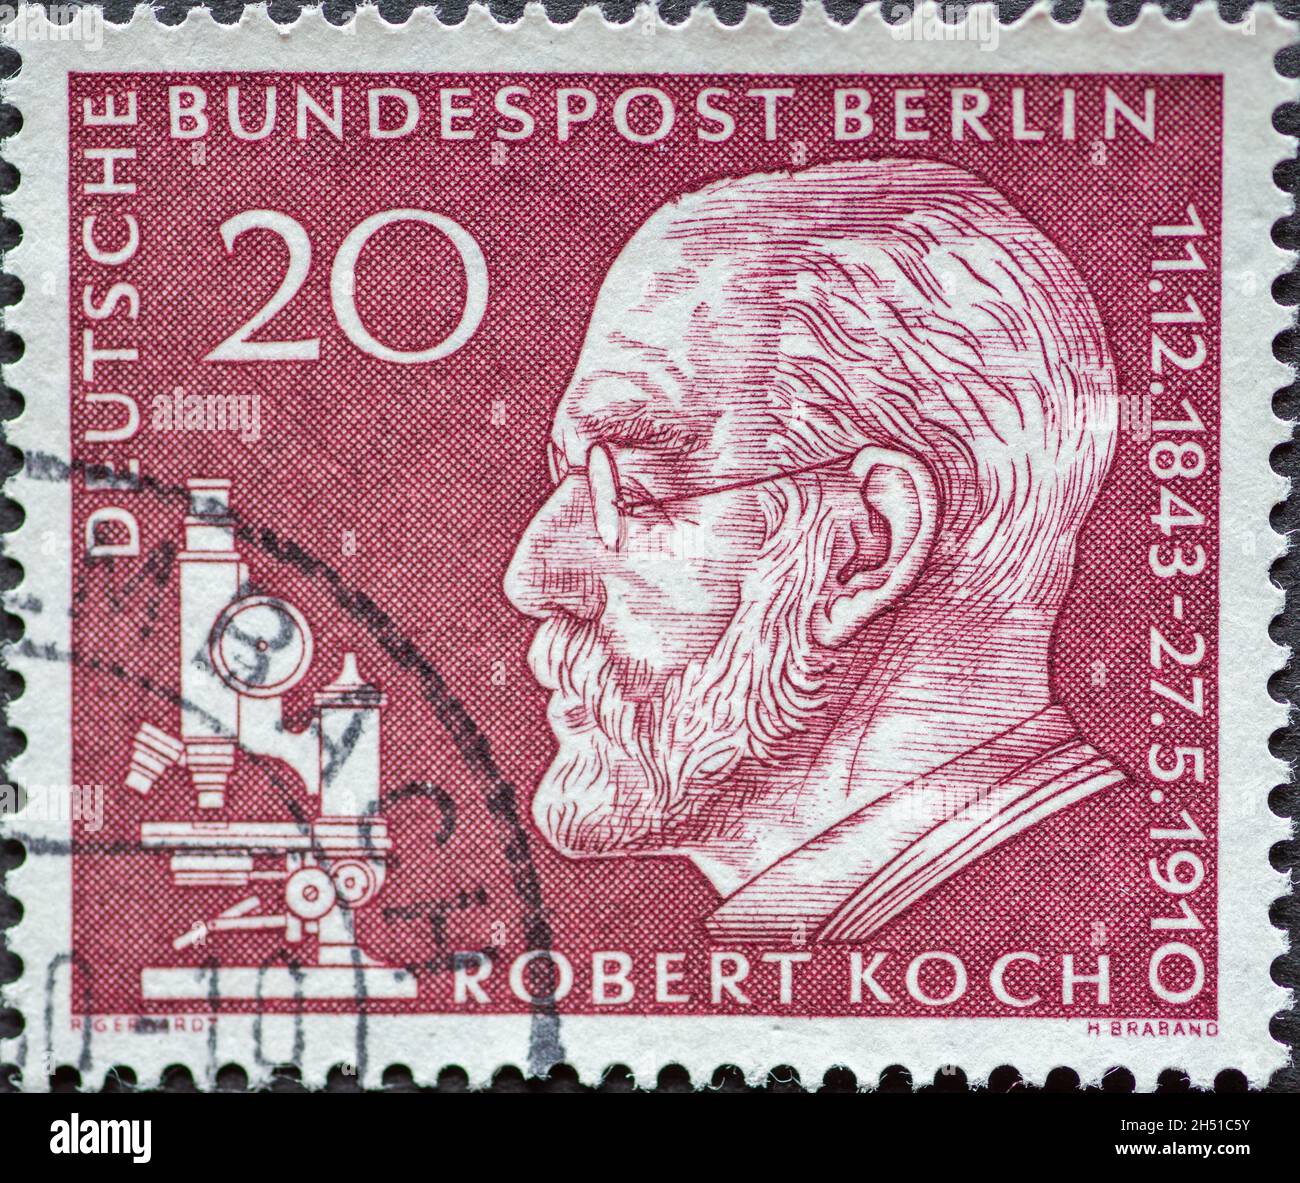 GERMANIA, Berlino - CIRCA 1960: Un francobollo dalla Germania, Berlino che mostra il ritratto del medico e microbiologo Robert Koch sulla 50a anniv Foto Stock